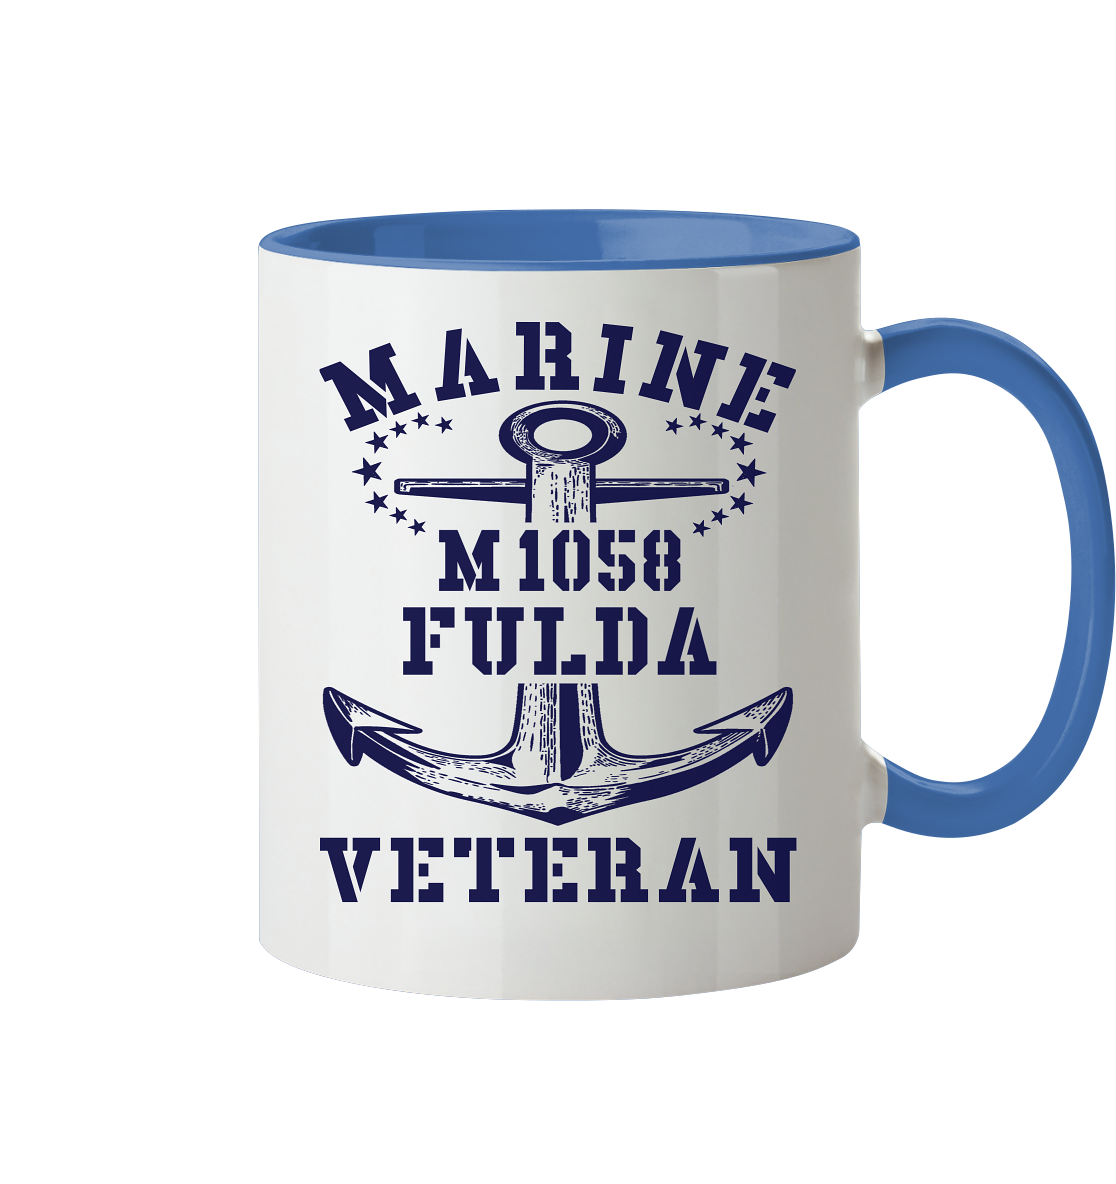 Mij.-Boot M1058 FULDA Marine Veteran - Tasse zweifarbig